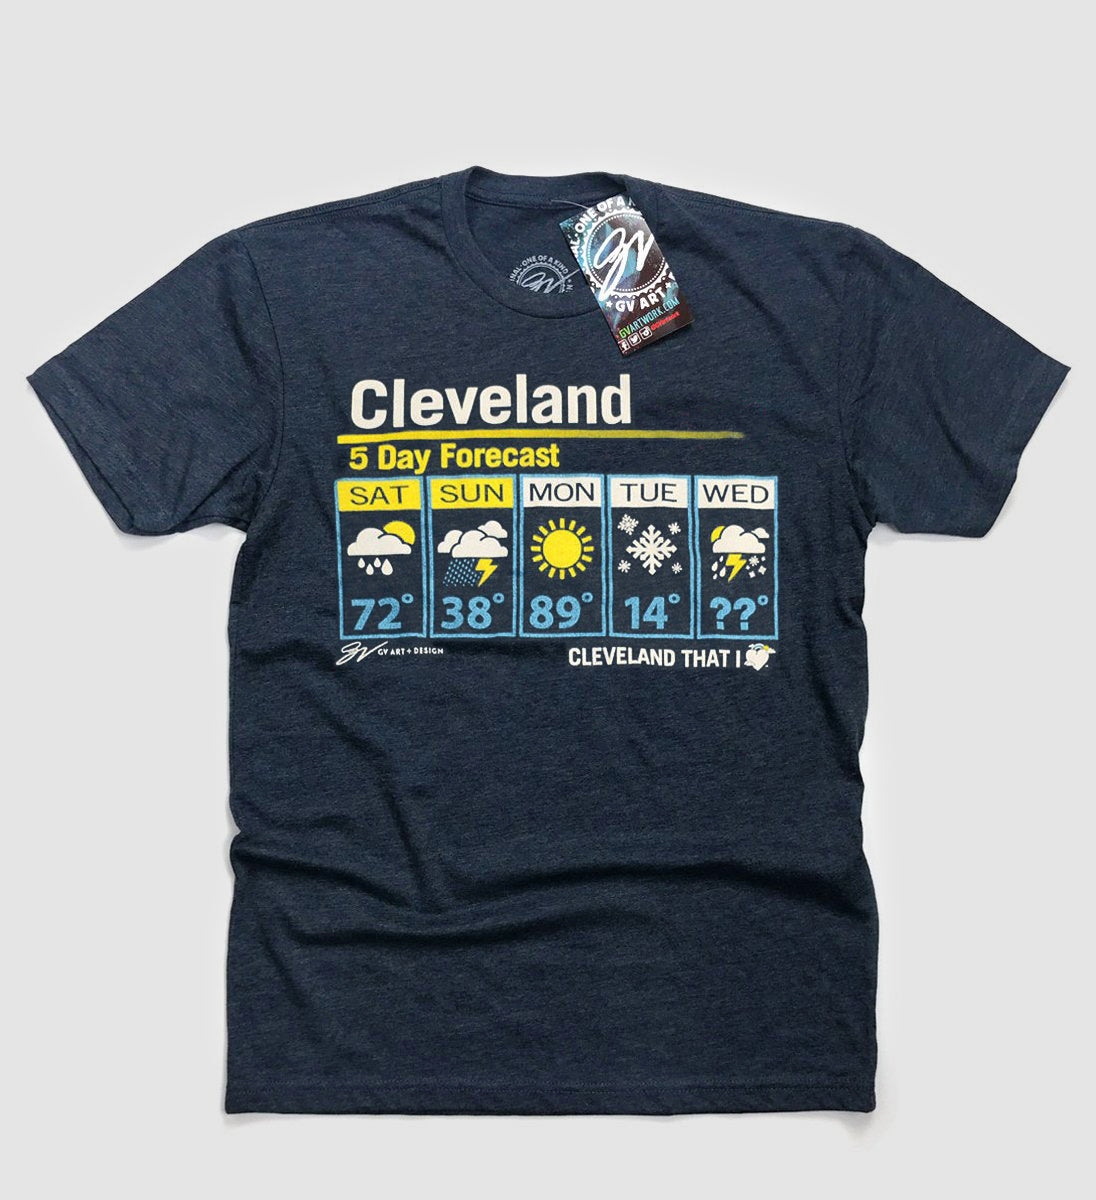 Cleveland 5 Day Forecast Shirt